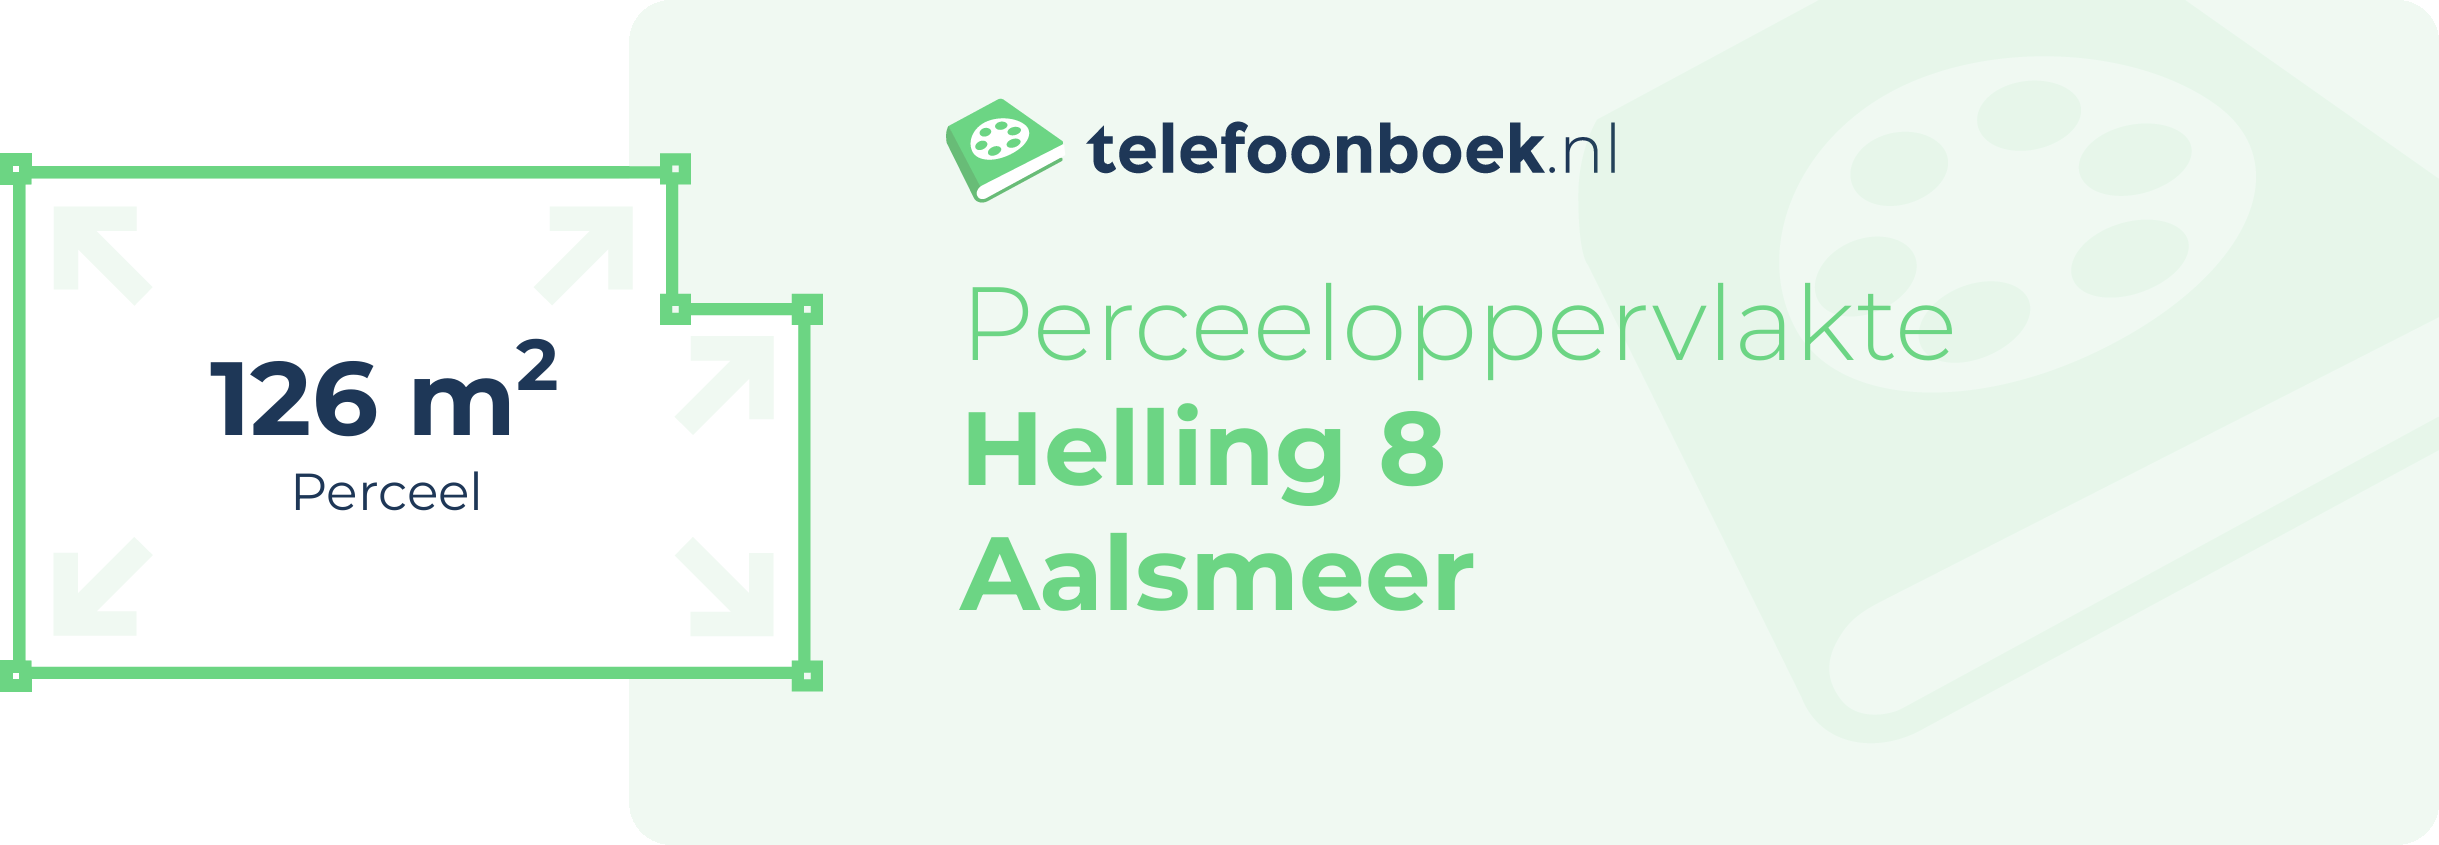 Perceeloppervlakte Helling 8 Aalsmeer